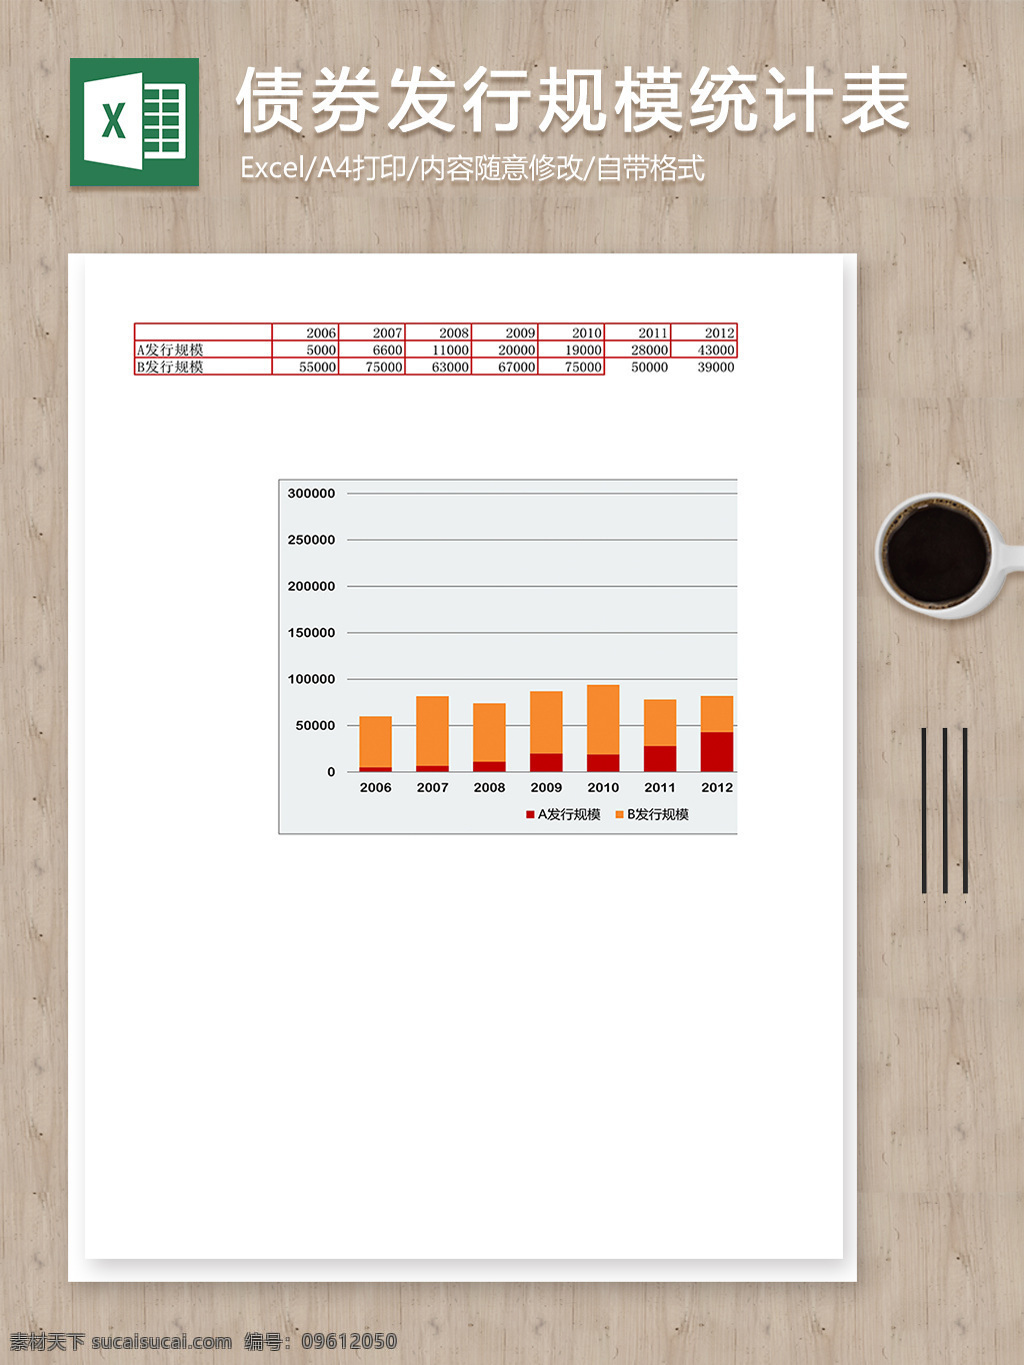 债券 发行 规模 统计 柱 形 图 分析 excel 表 表格 表格模板 表格设计 财务报表 财务表格 费用报表 统计表